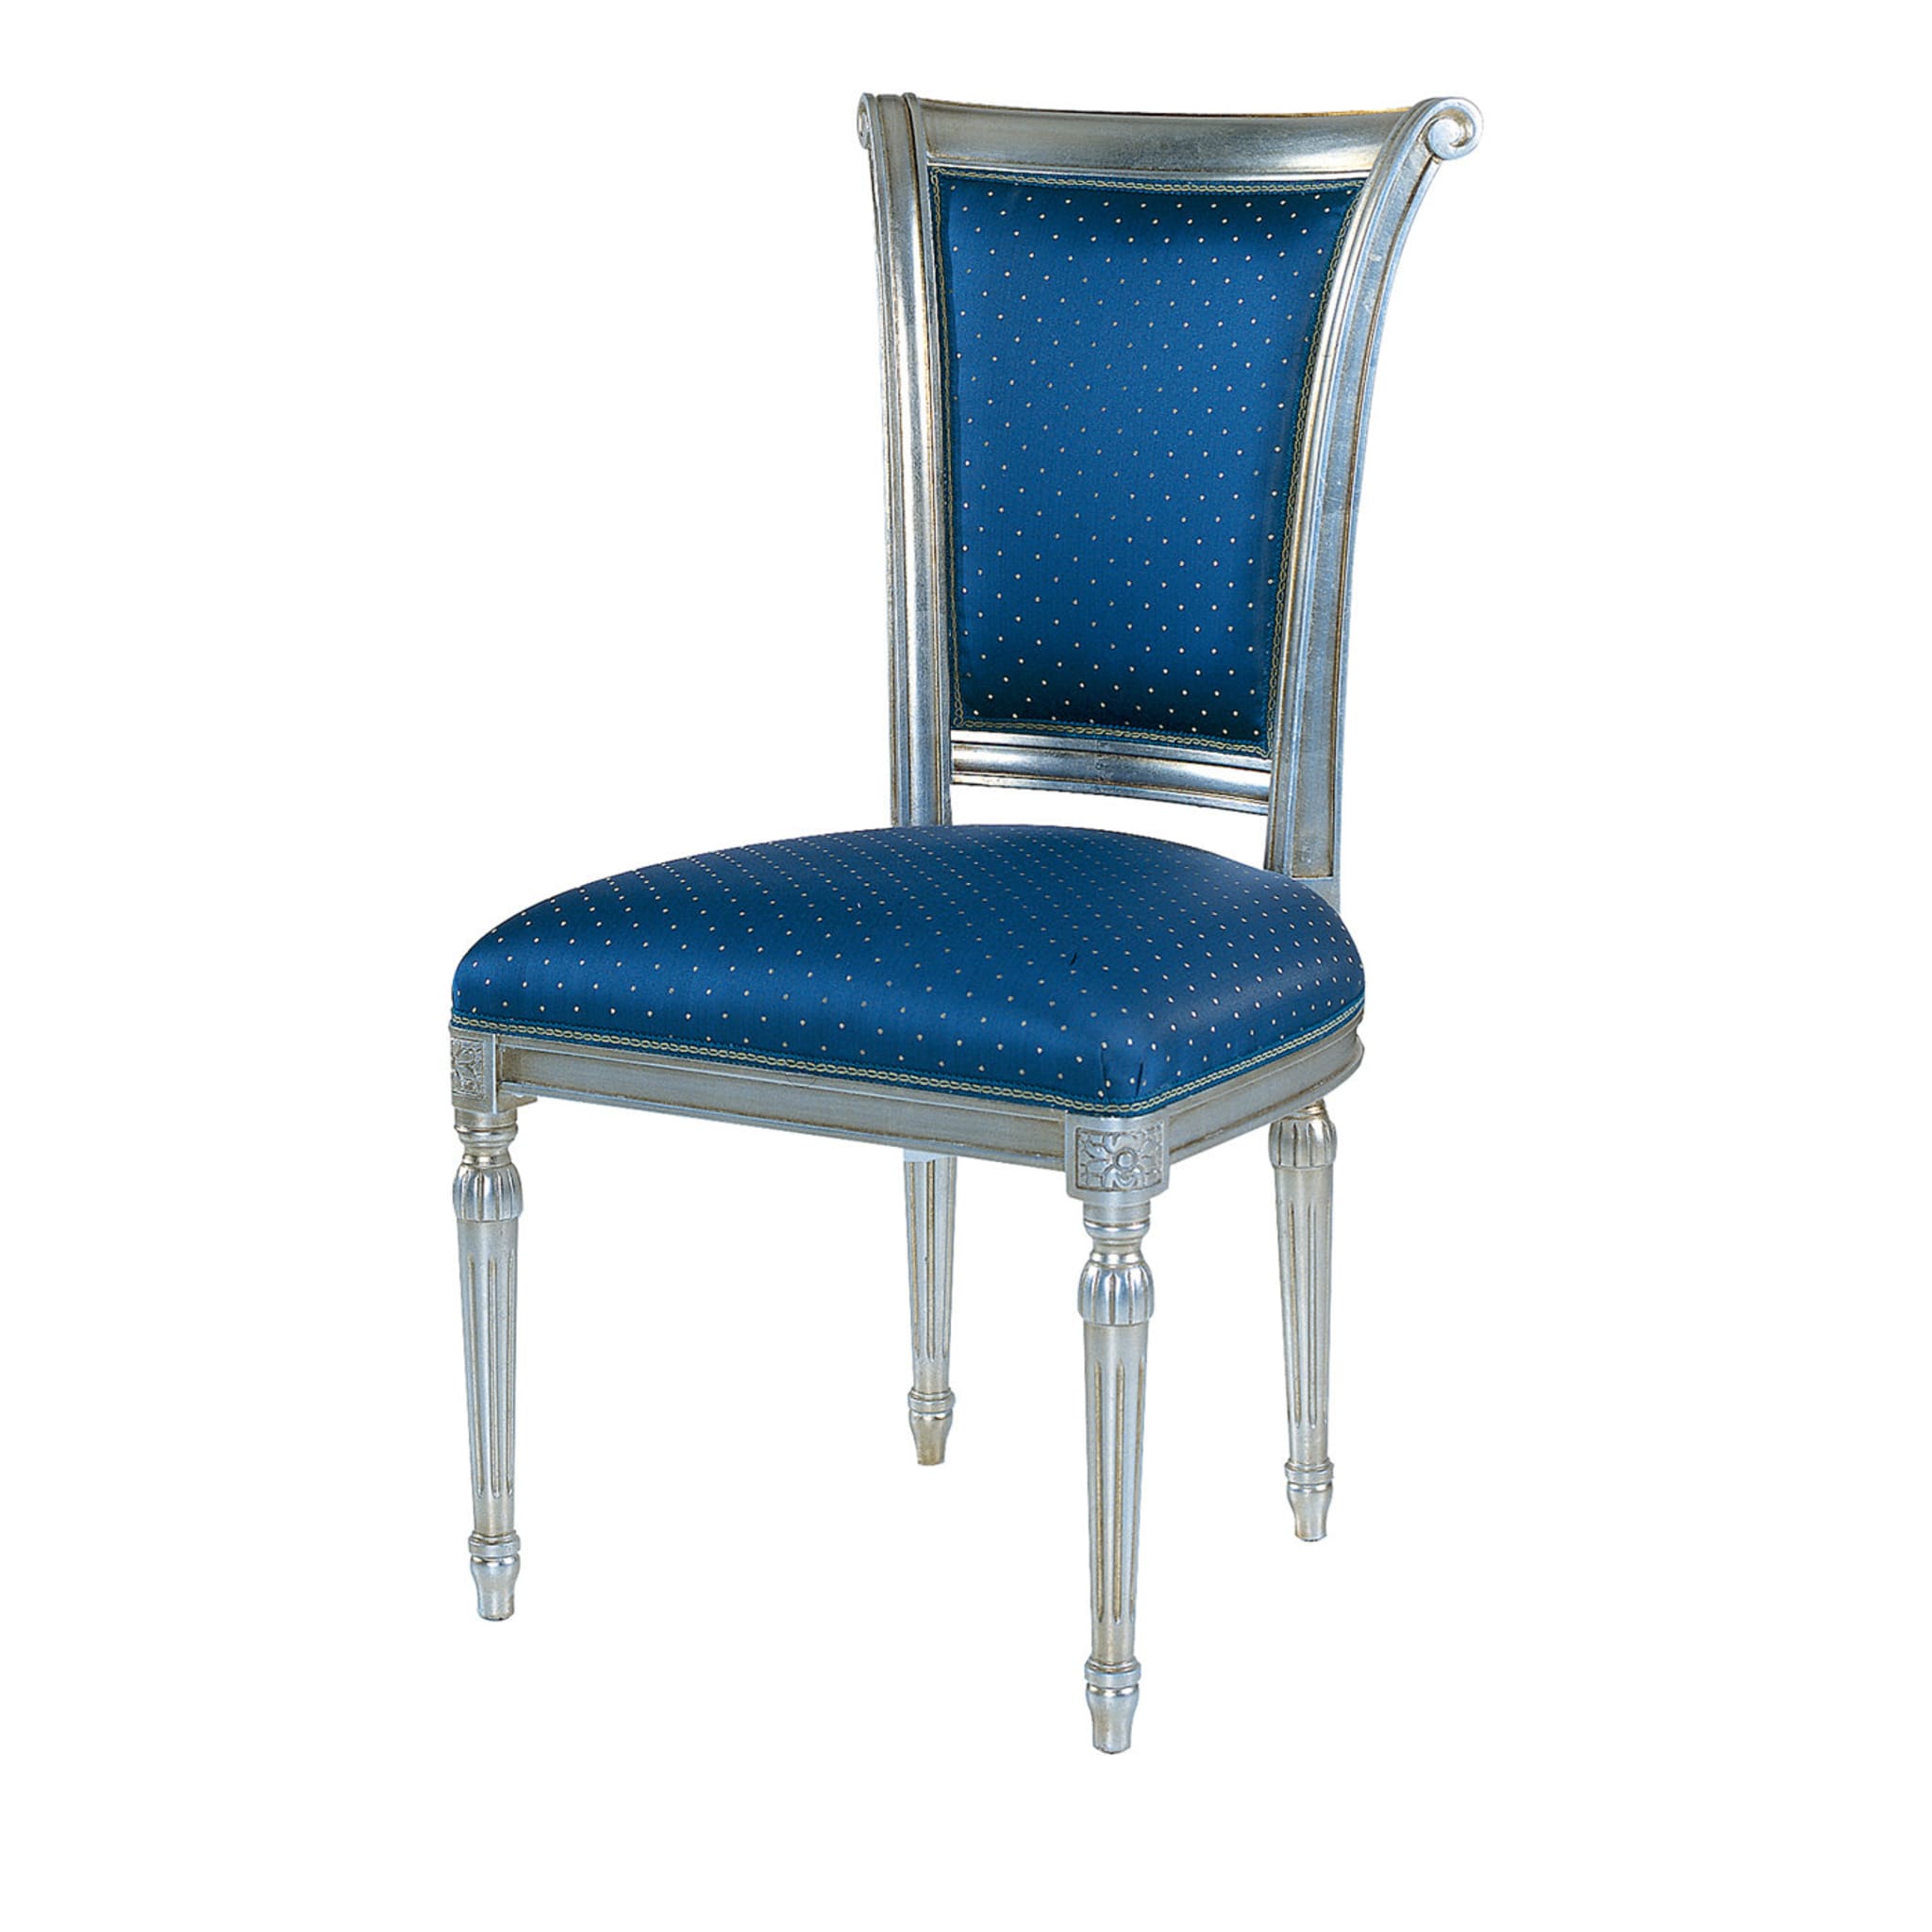 Capotavola Blue Chair - Main view